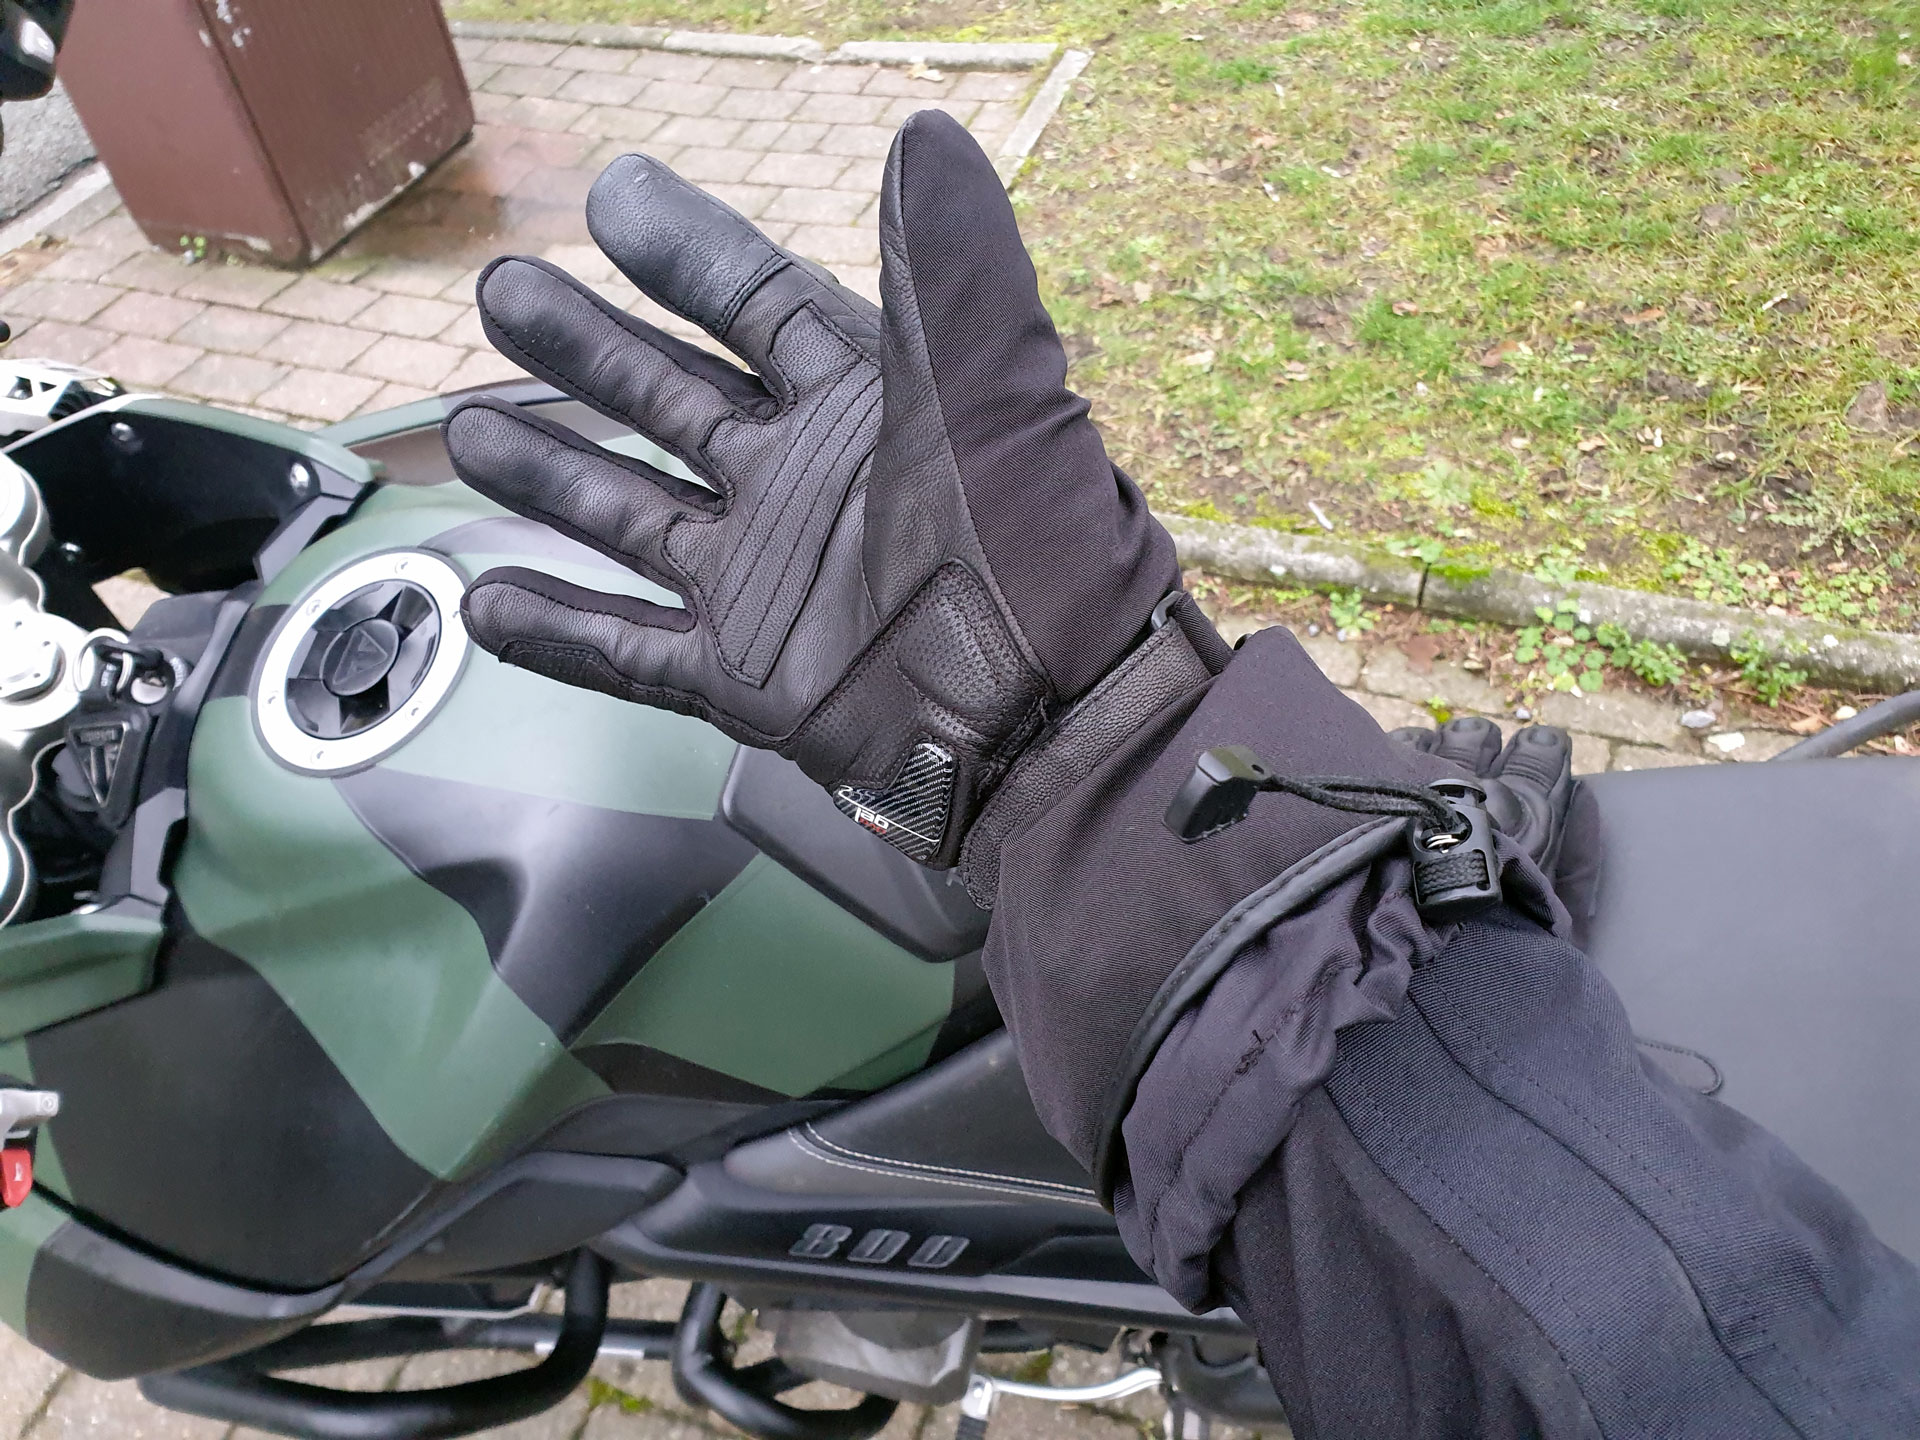 Test des gants hiver chauffants Racer Heat 3 : tranquillement au